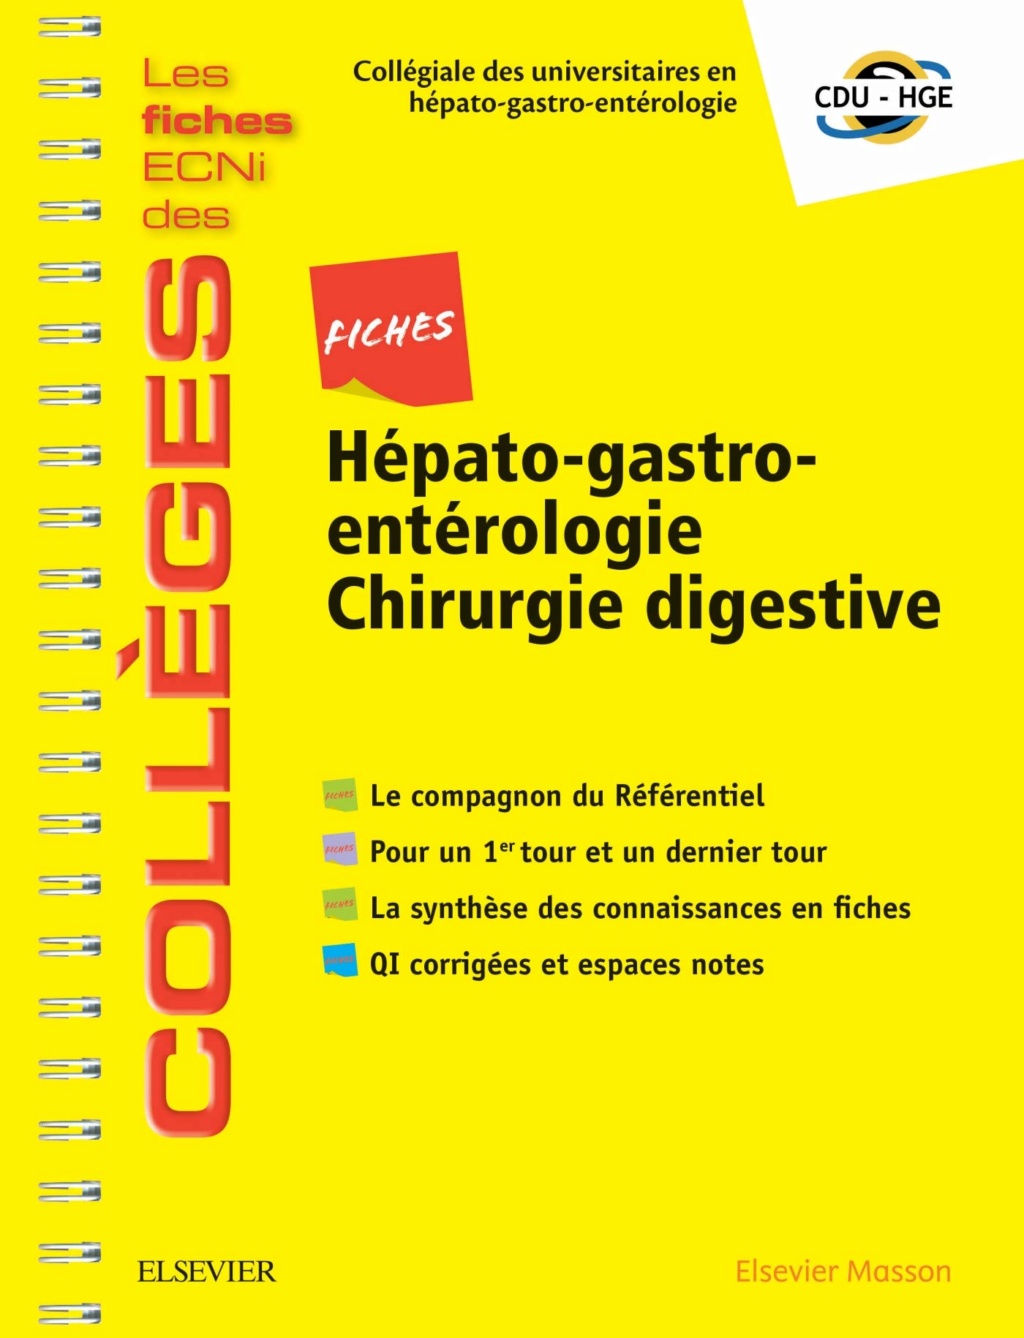 Livres Médicales - Fiches Hépato-gastro-entérologie Chirurgie digestive: Les fiches ECNi et QI des Collèges 2019 - Page 2 Fiches11